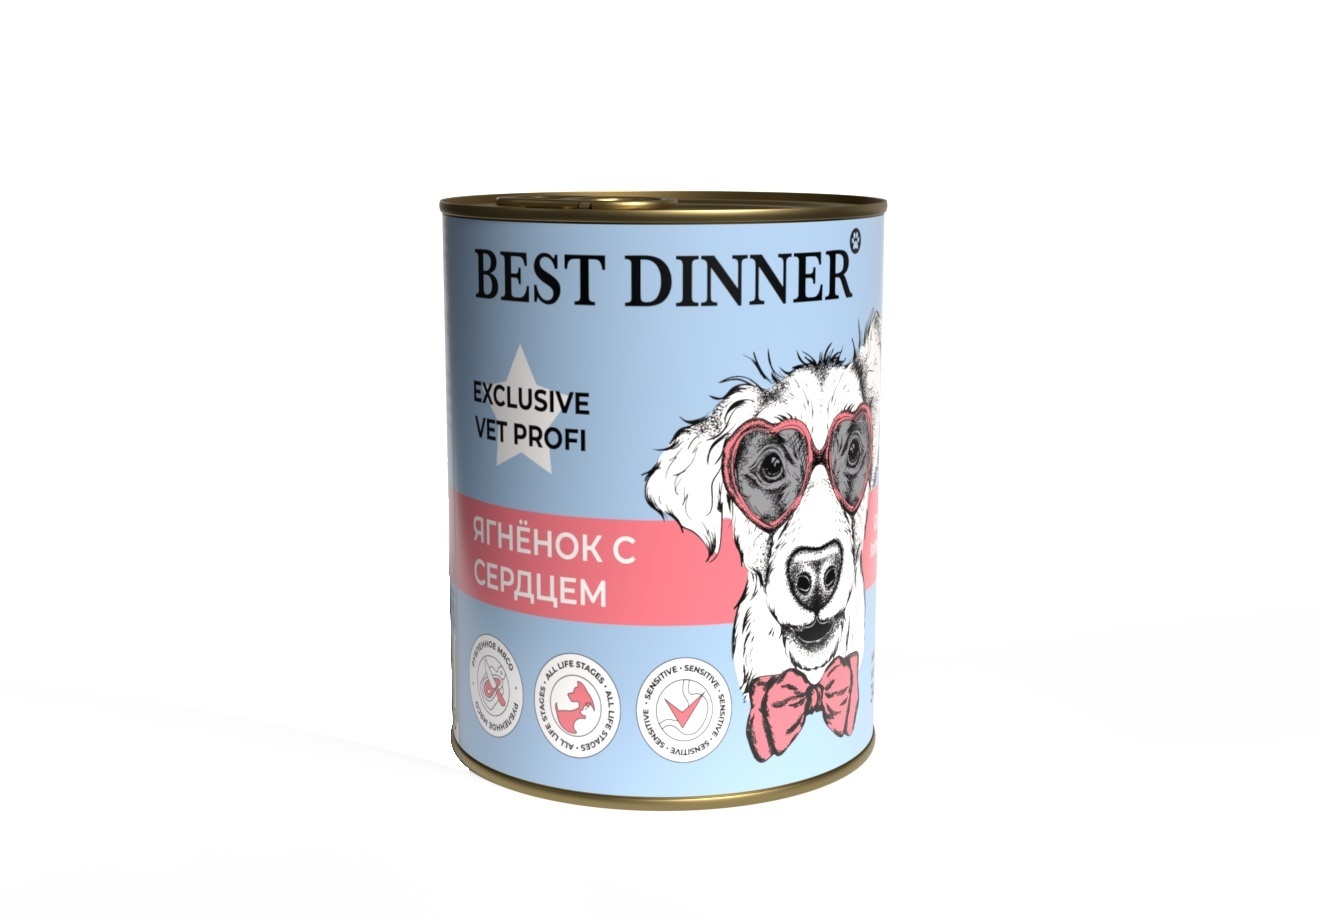 Best Dinner Best Dinner консервы Ягненок с сердцем для собак с чувствительным пищеварением (340 г) best dinner best dinner консервы для собак super premium с говядиной и языком 340 г